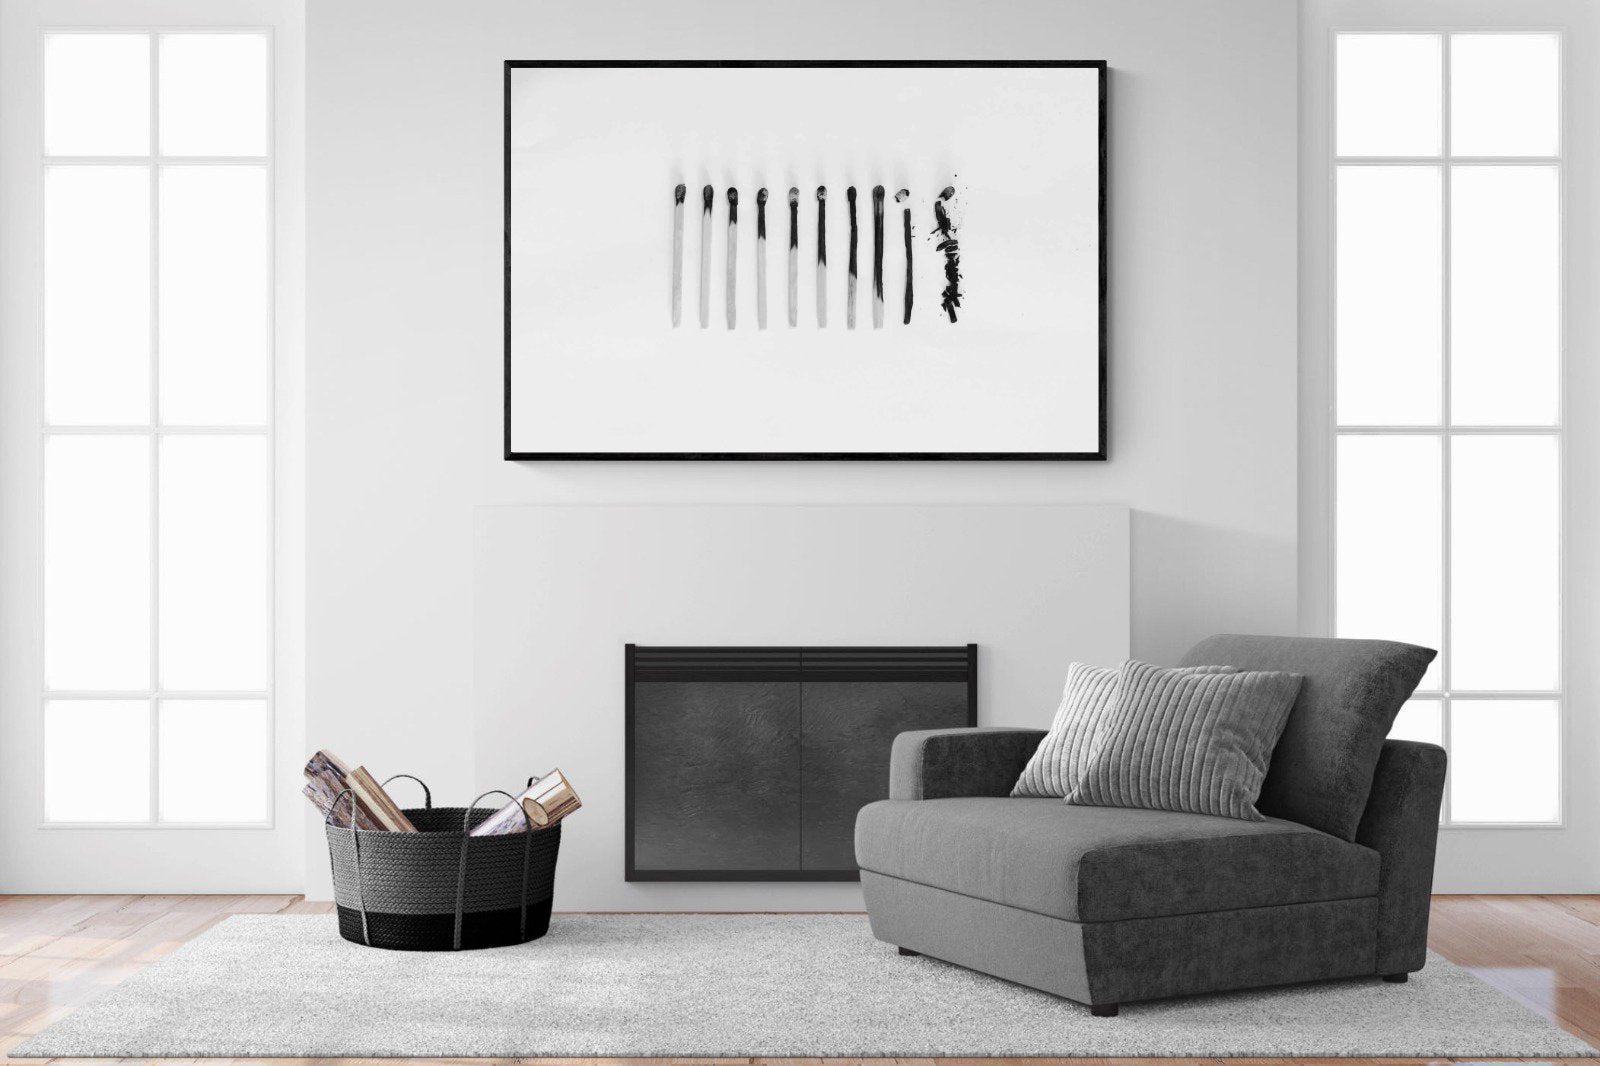 Matchsticks-Wall_Art-150 x 100cm-Mounted Canvas-Black-Pixalot